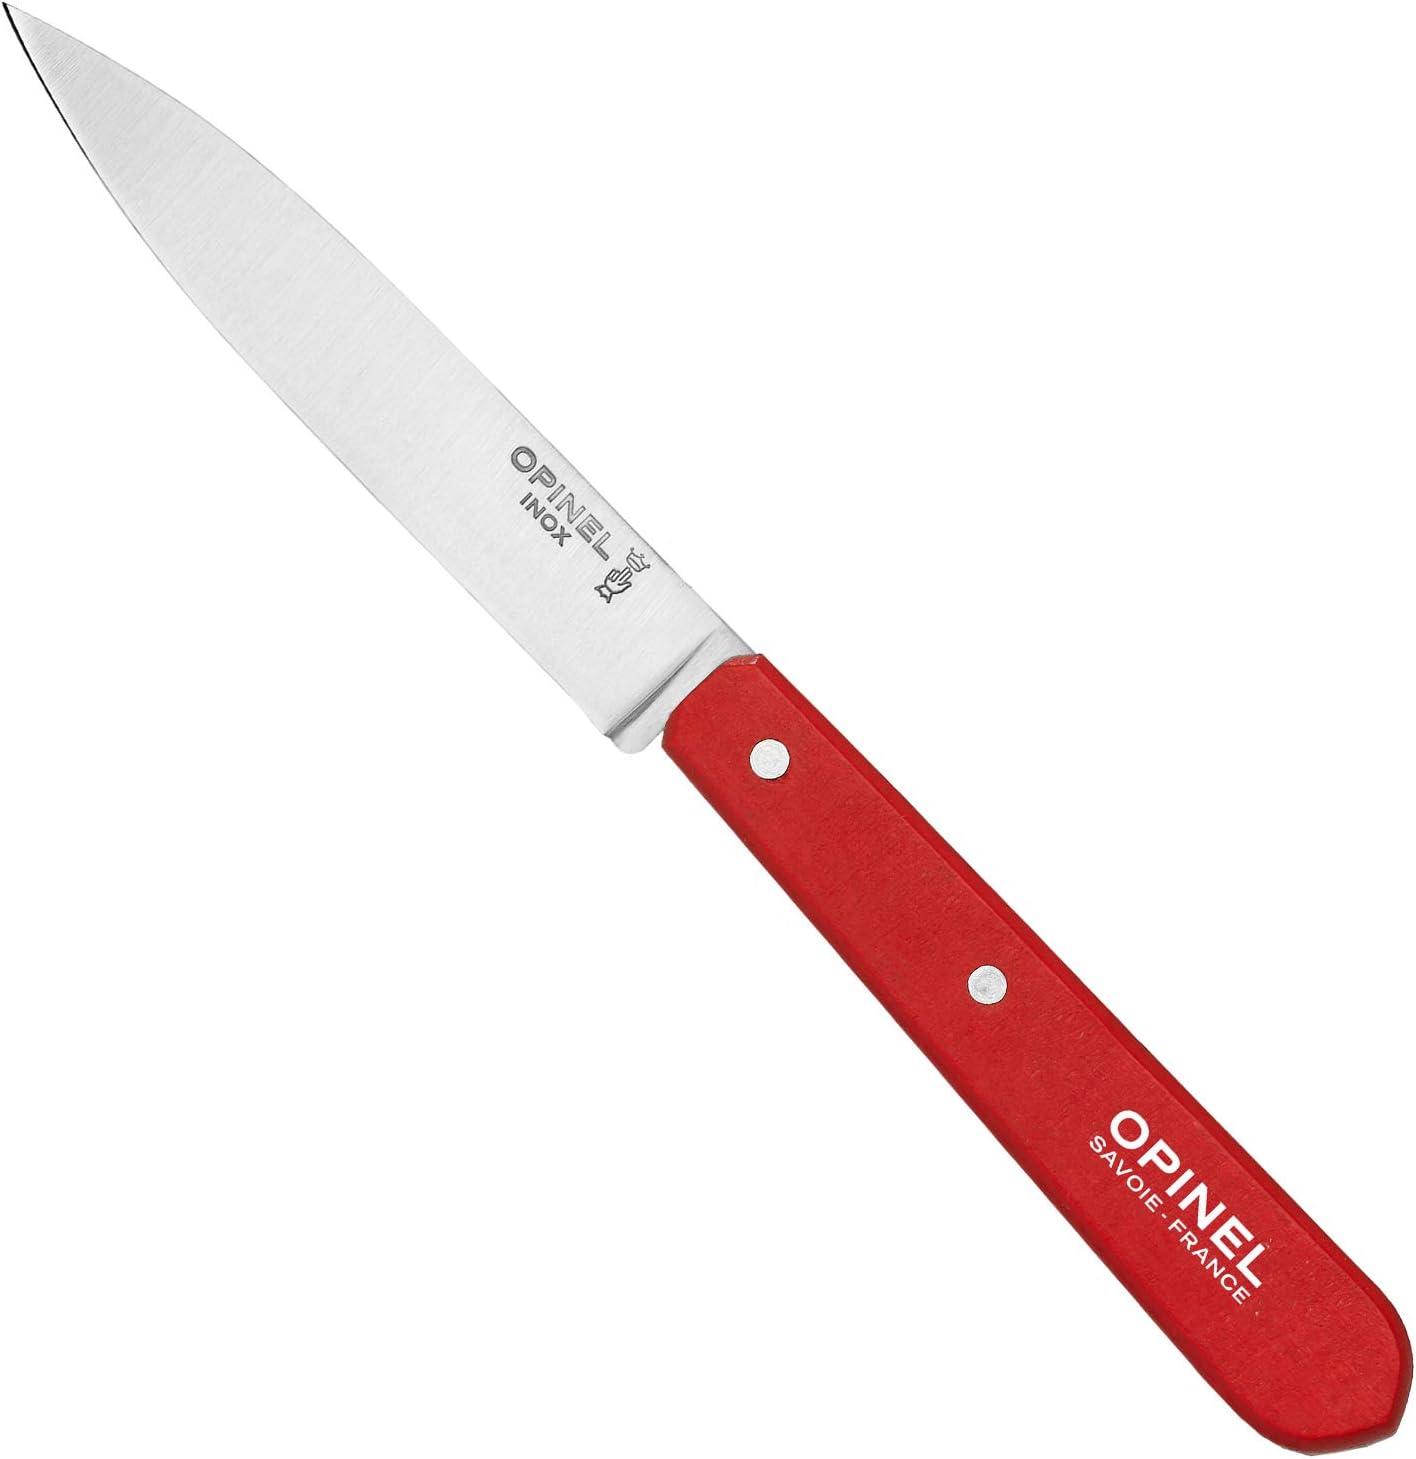 Opinel Essentials Kitchen Knives Box Set